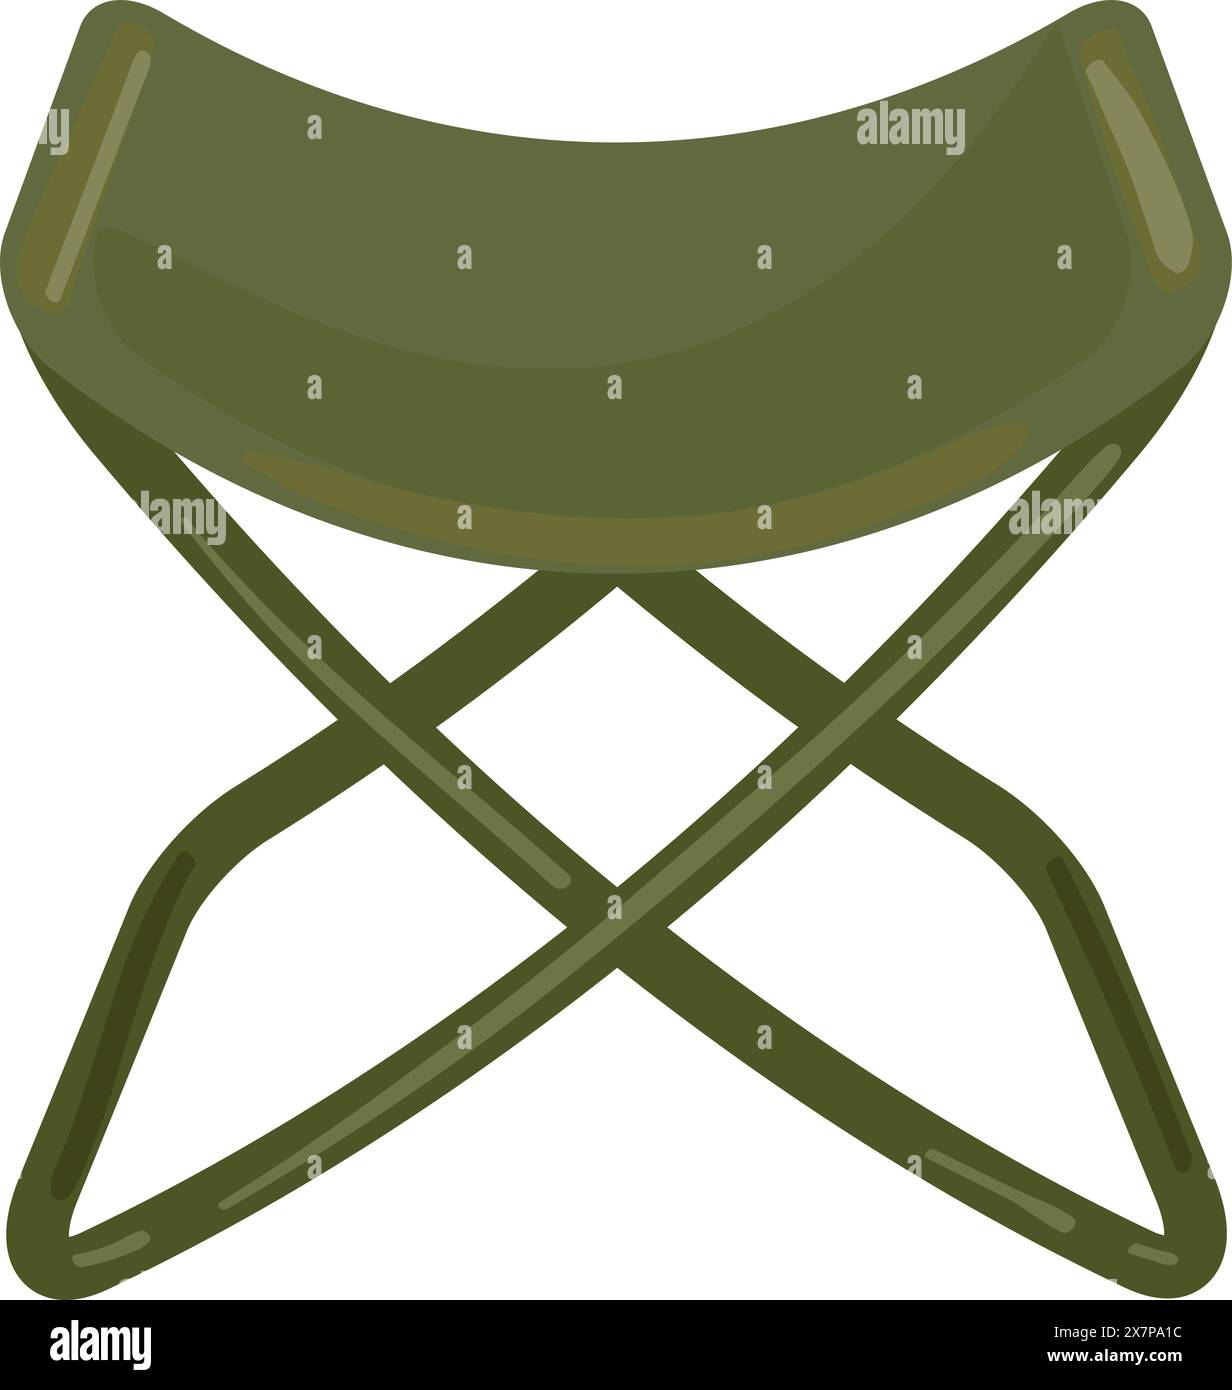 Green folding camping stool illustration Stock Vector